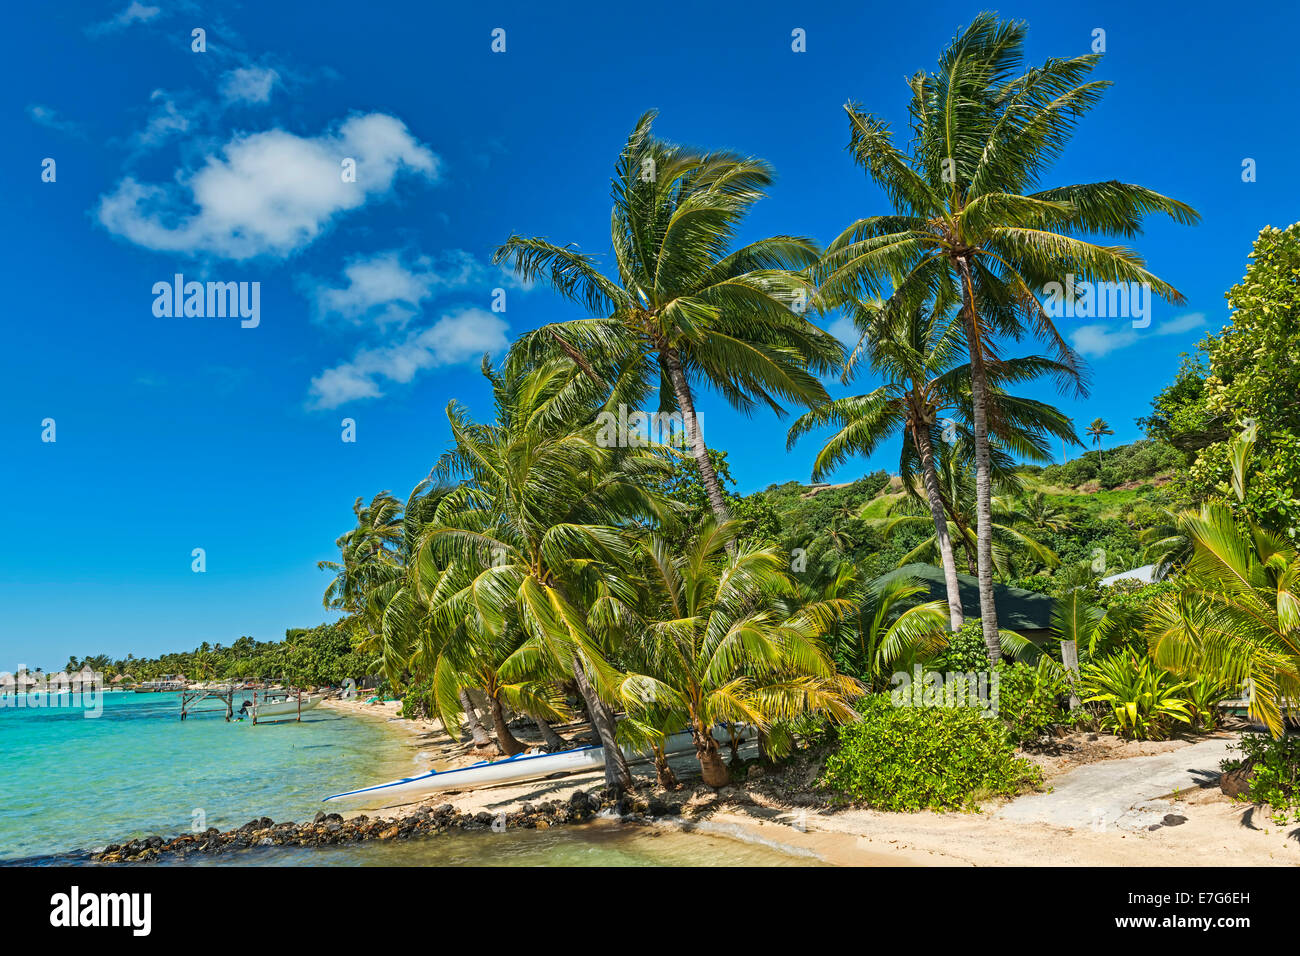 Beach with lush vegetation, Bora Bora, French Polynesia Stock Photo